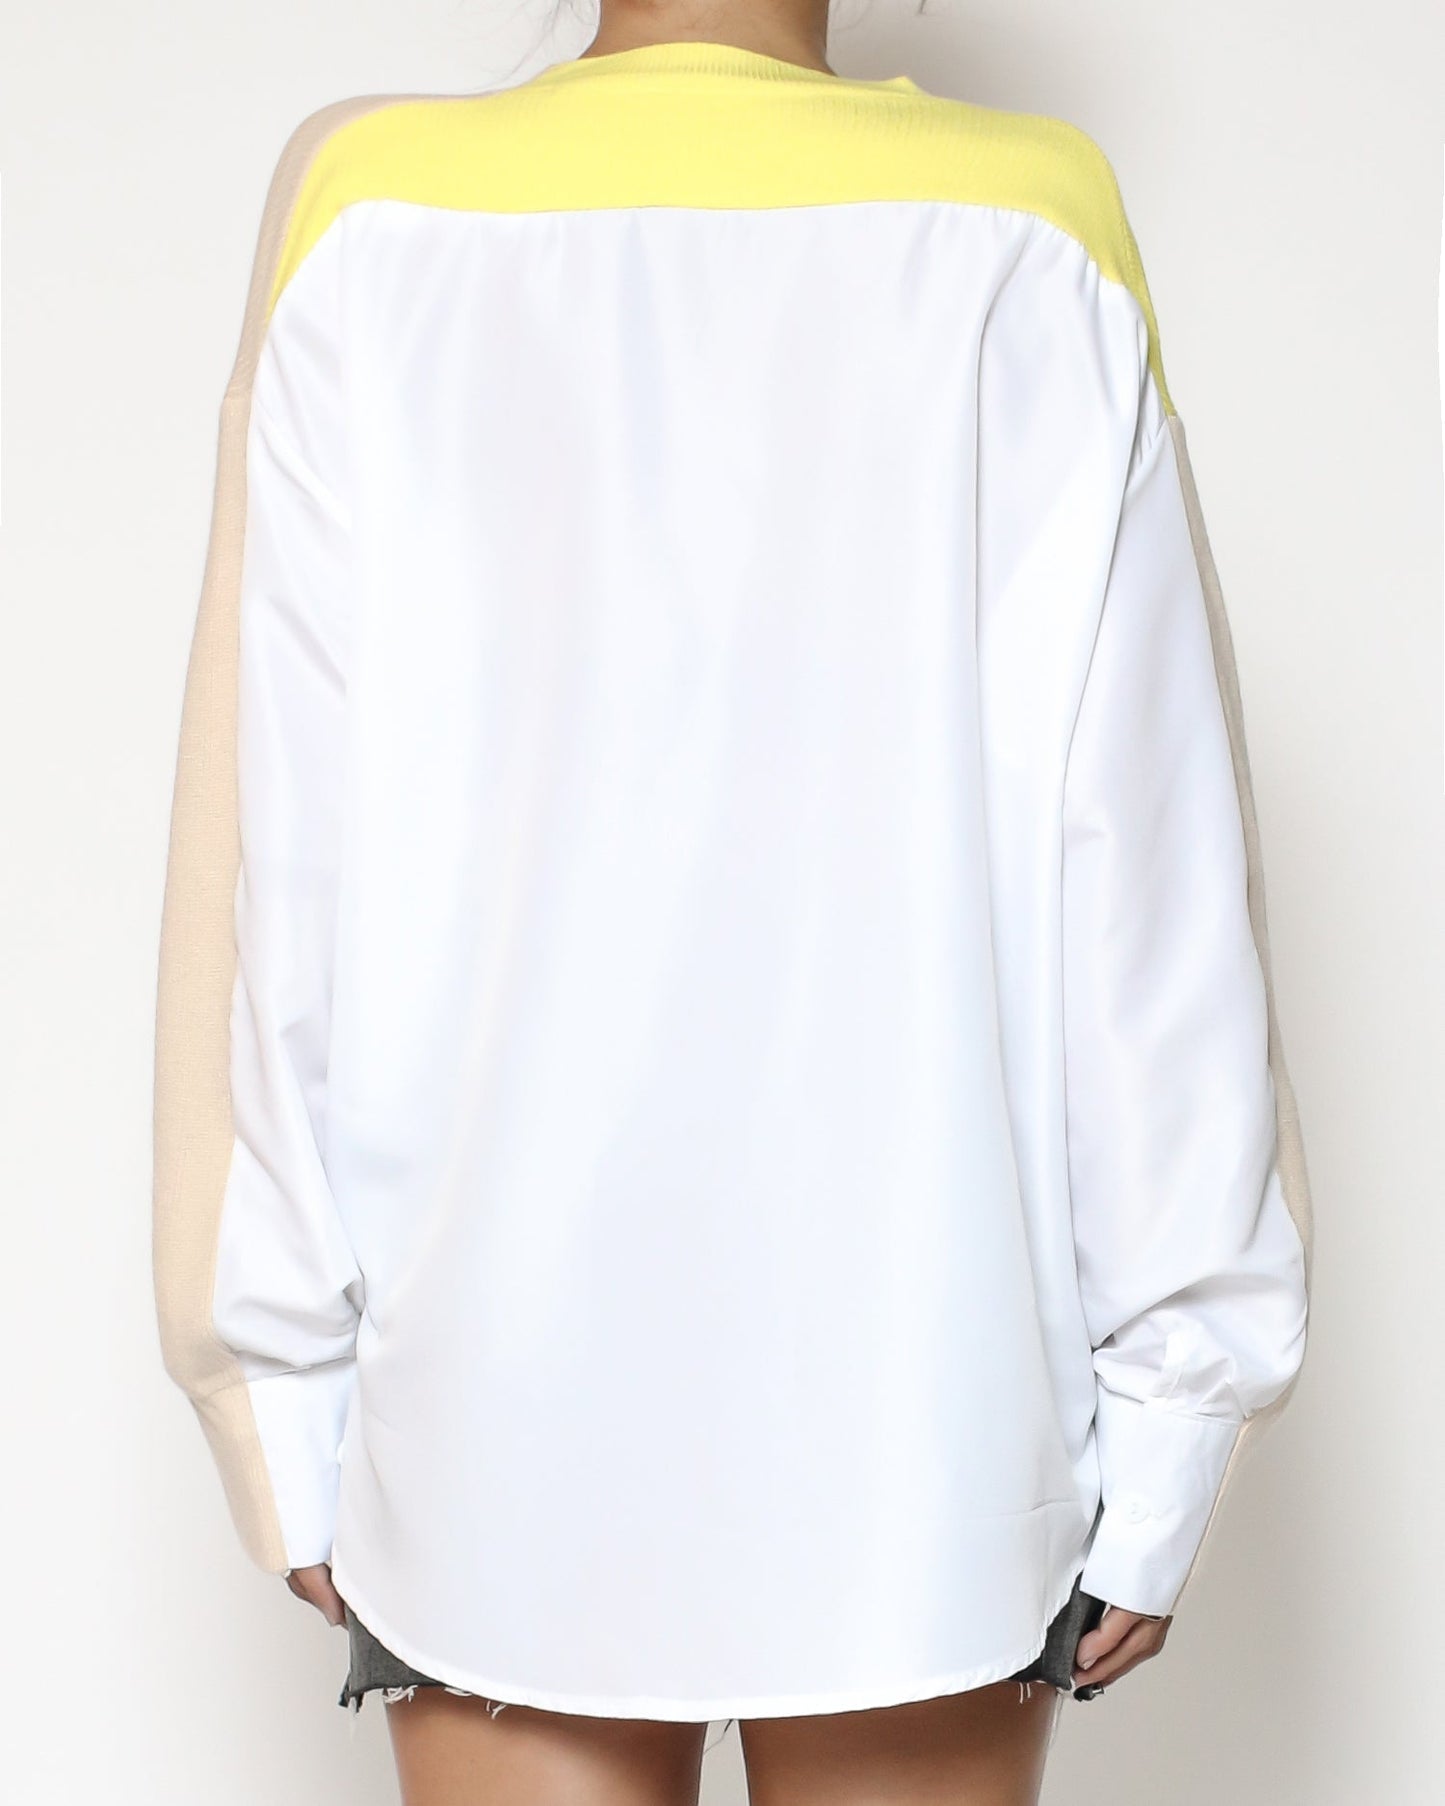 米色和黃色針織搭配白色襯衫背面撞色上衣*預購*